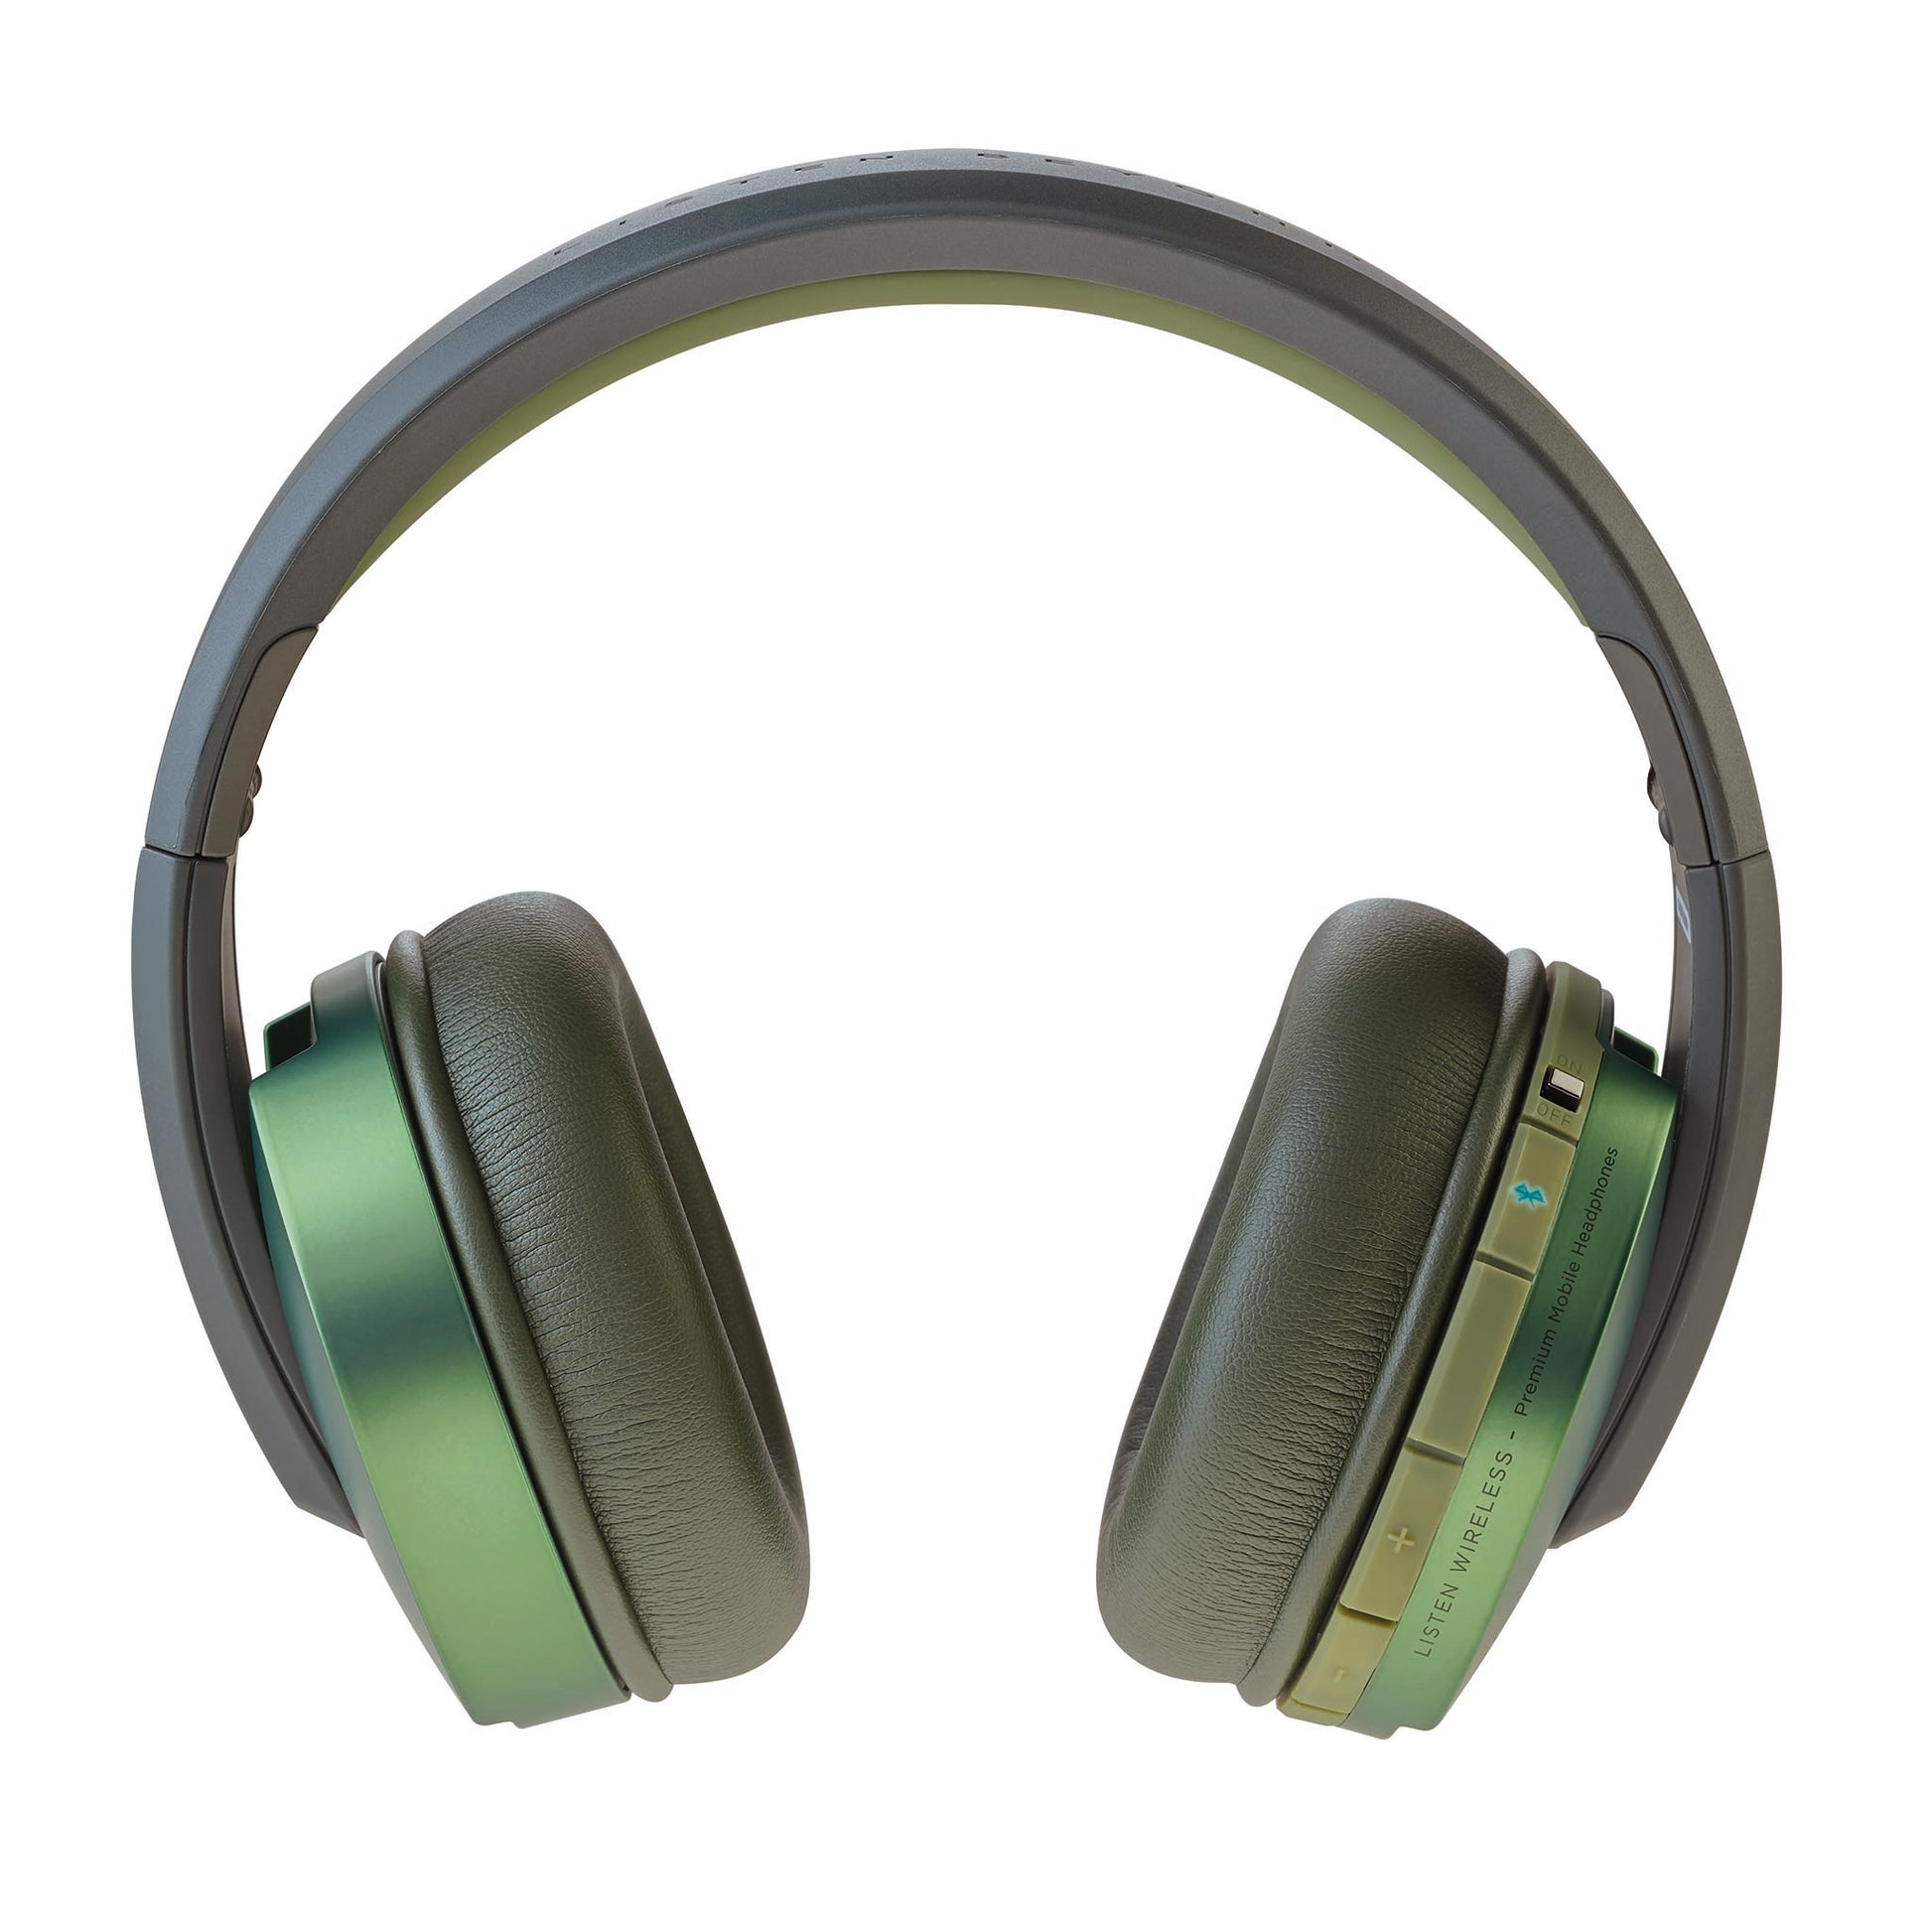 Focal Listen Wireless Headphones For Sale